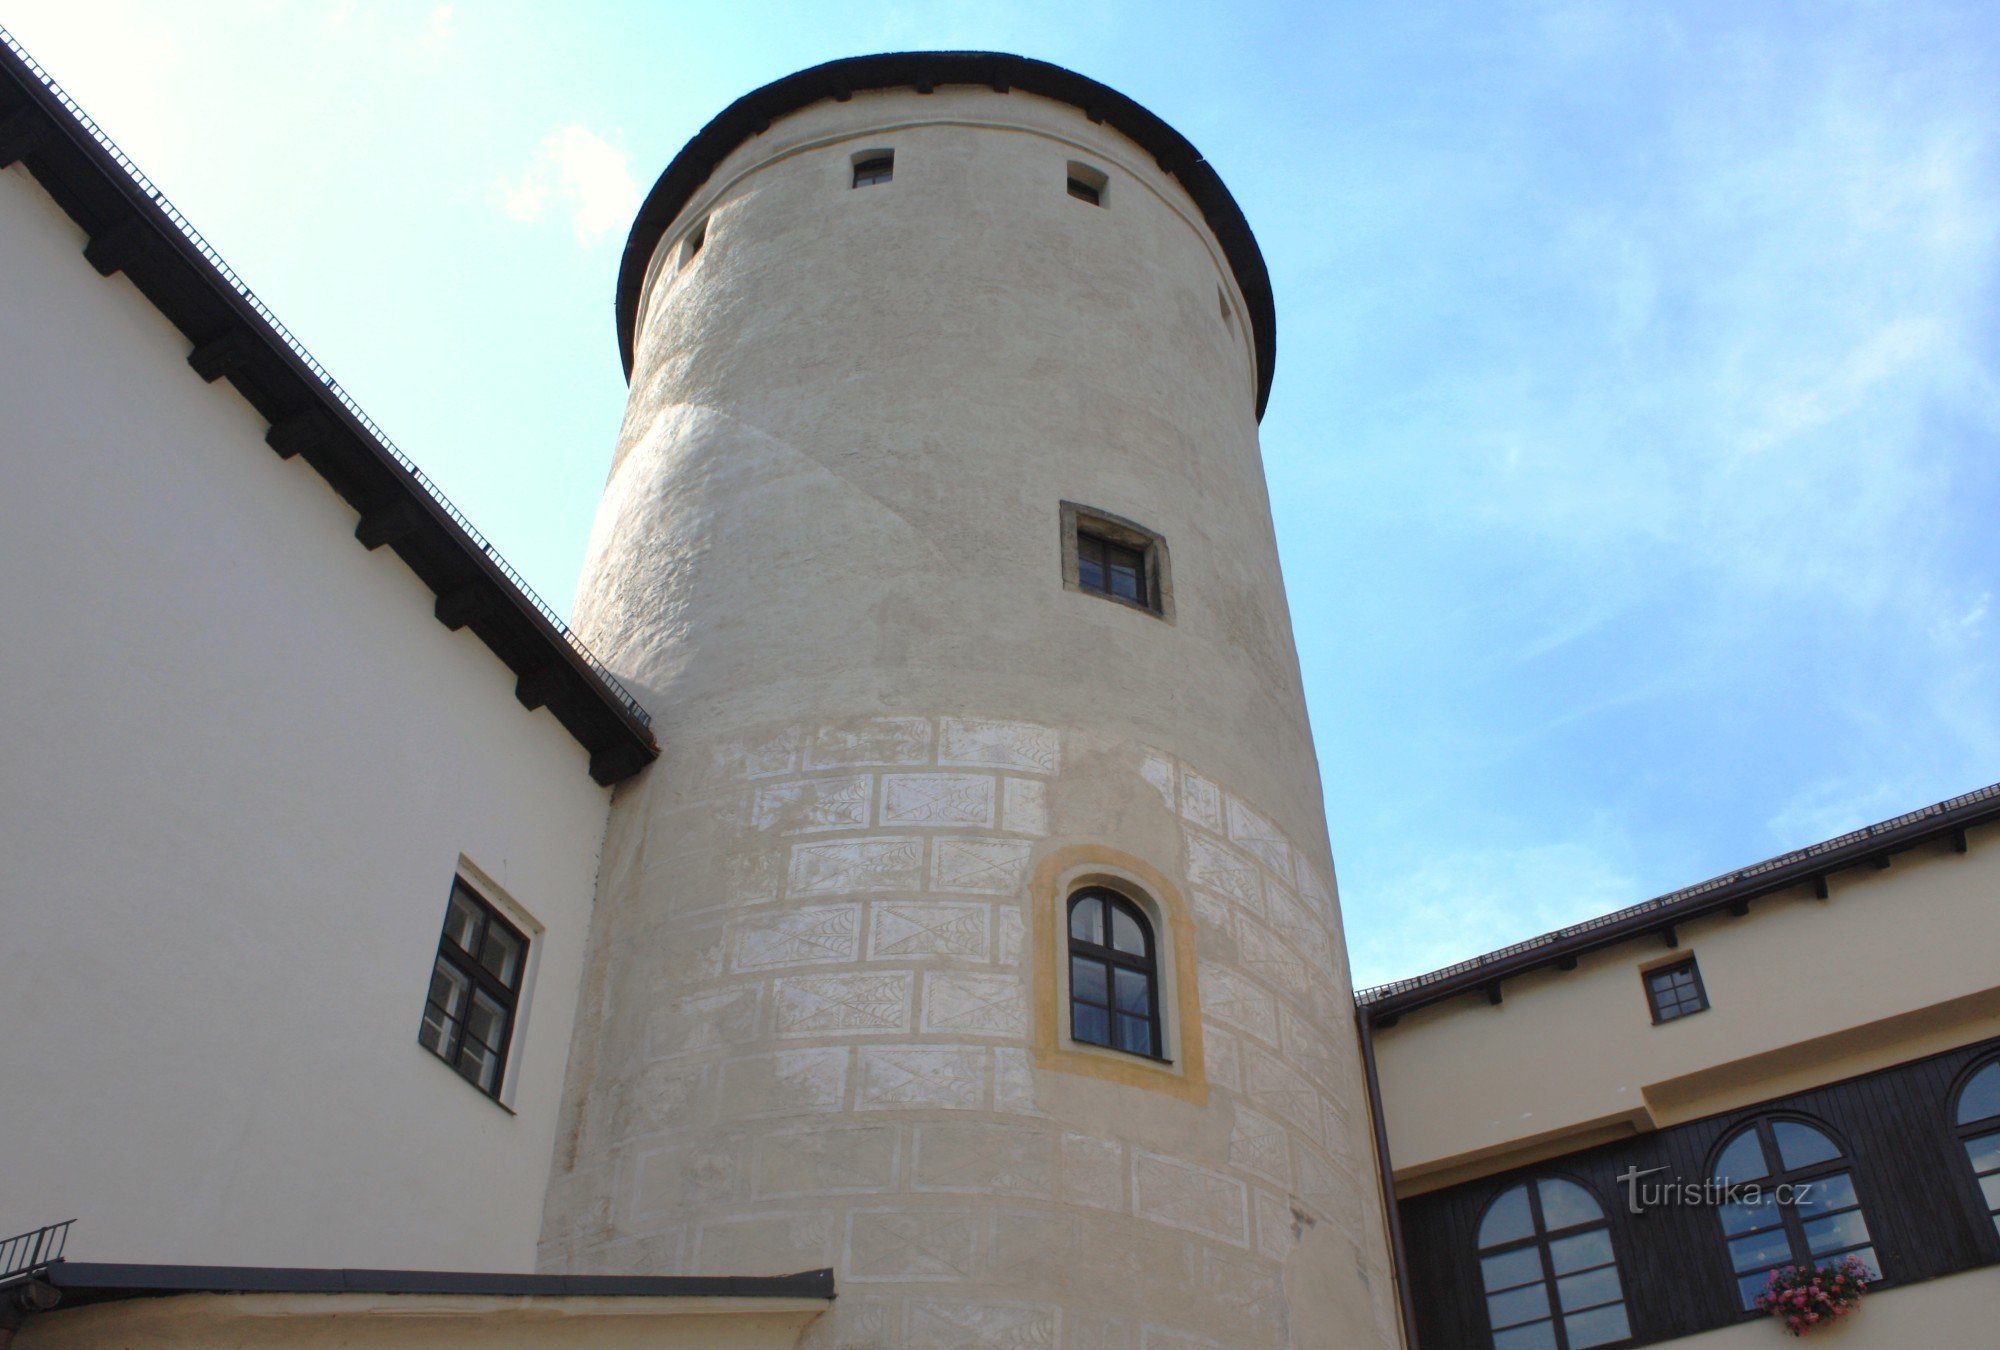 Tháp lâu đài nhìn từ sân trong